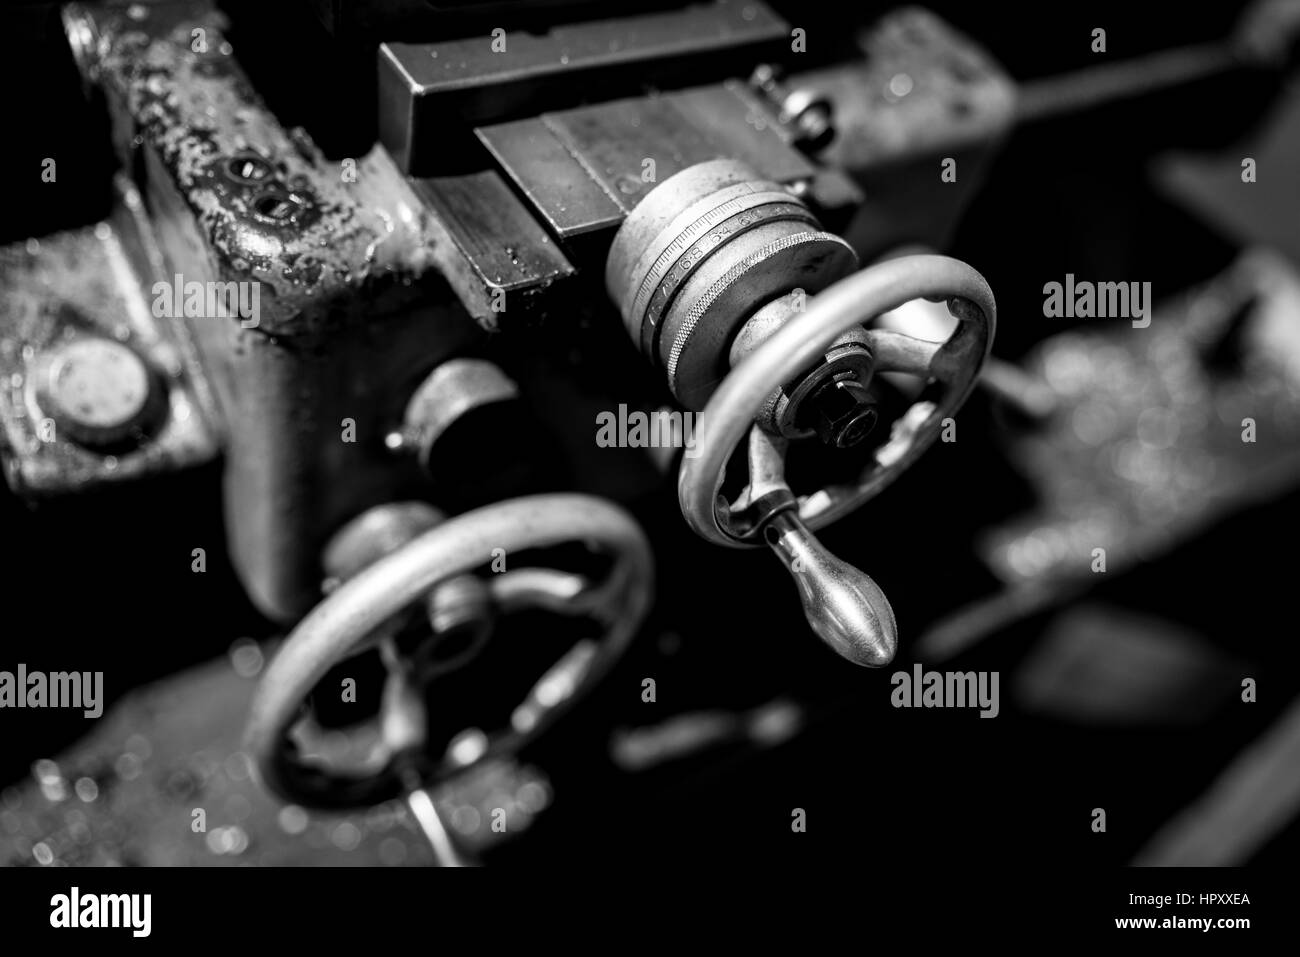 Eine unscharfe Aufnahme von Maschinenteilen in Mono. Stockfoto